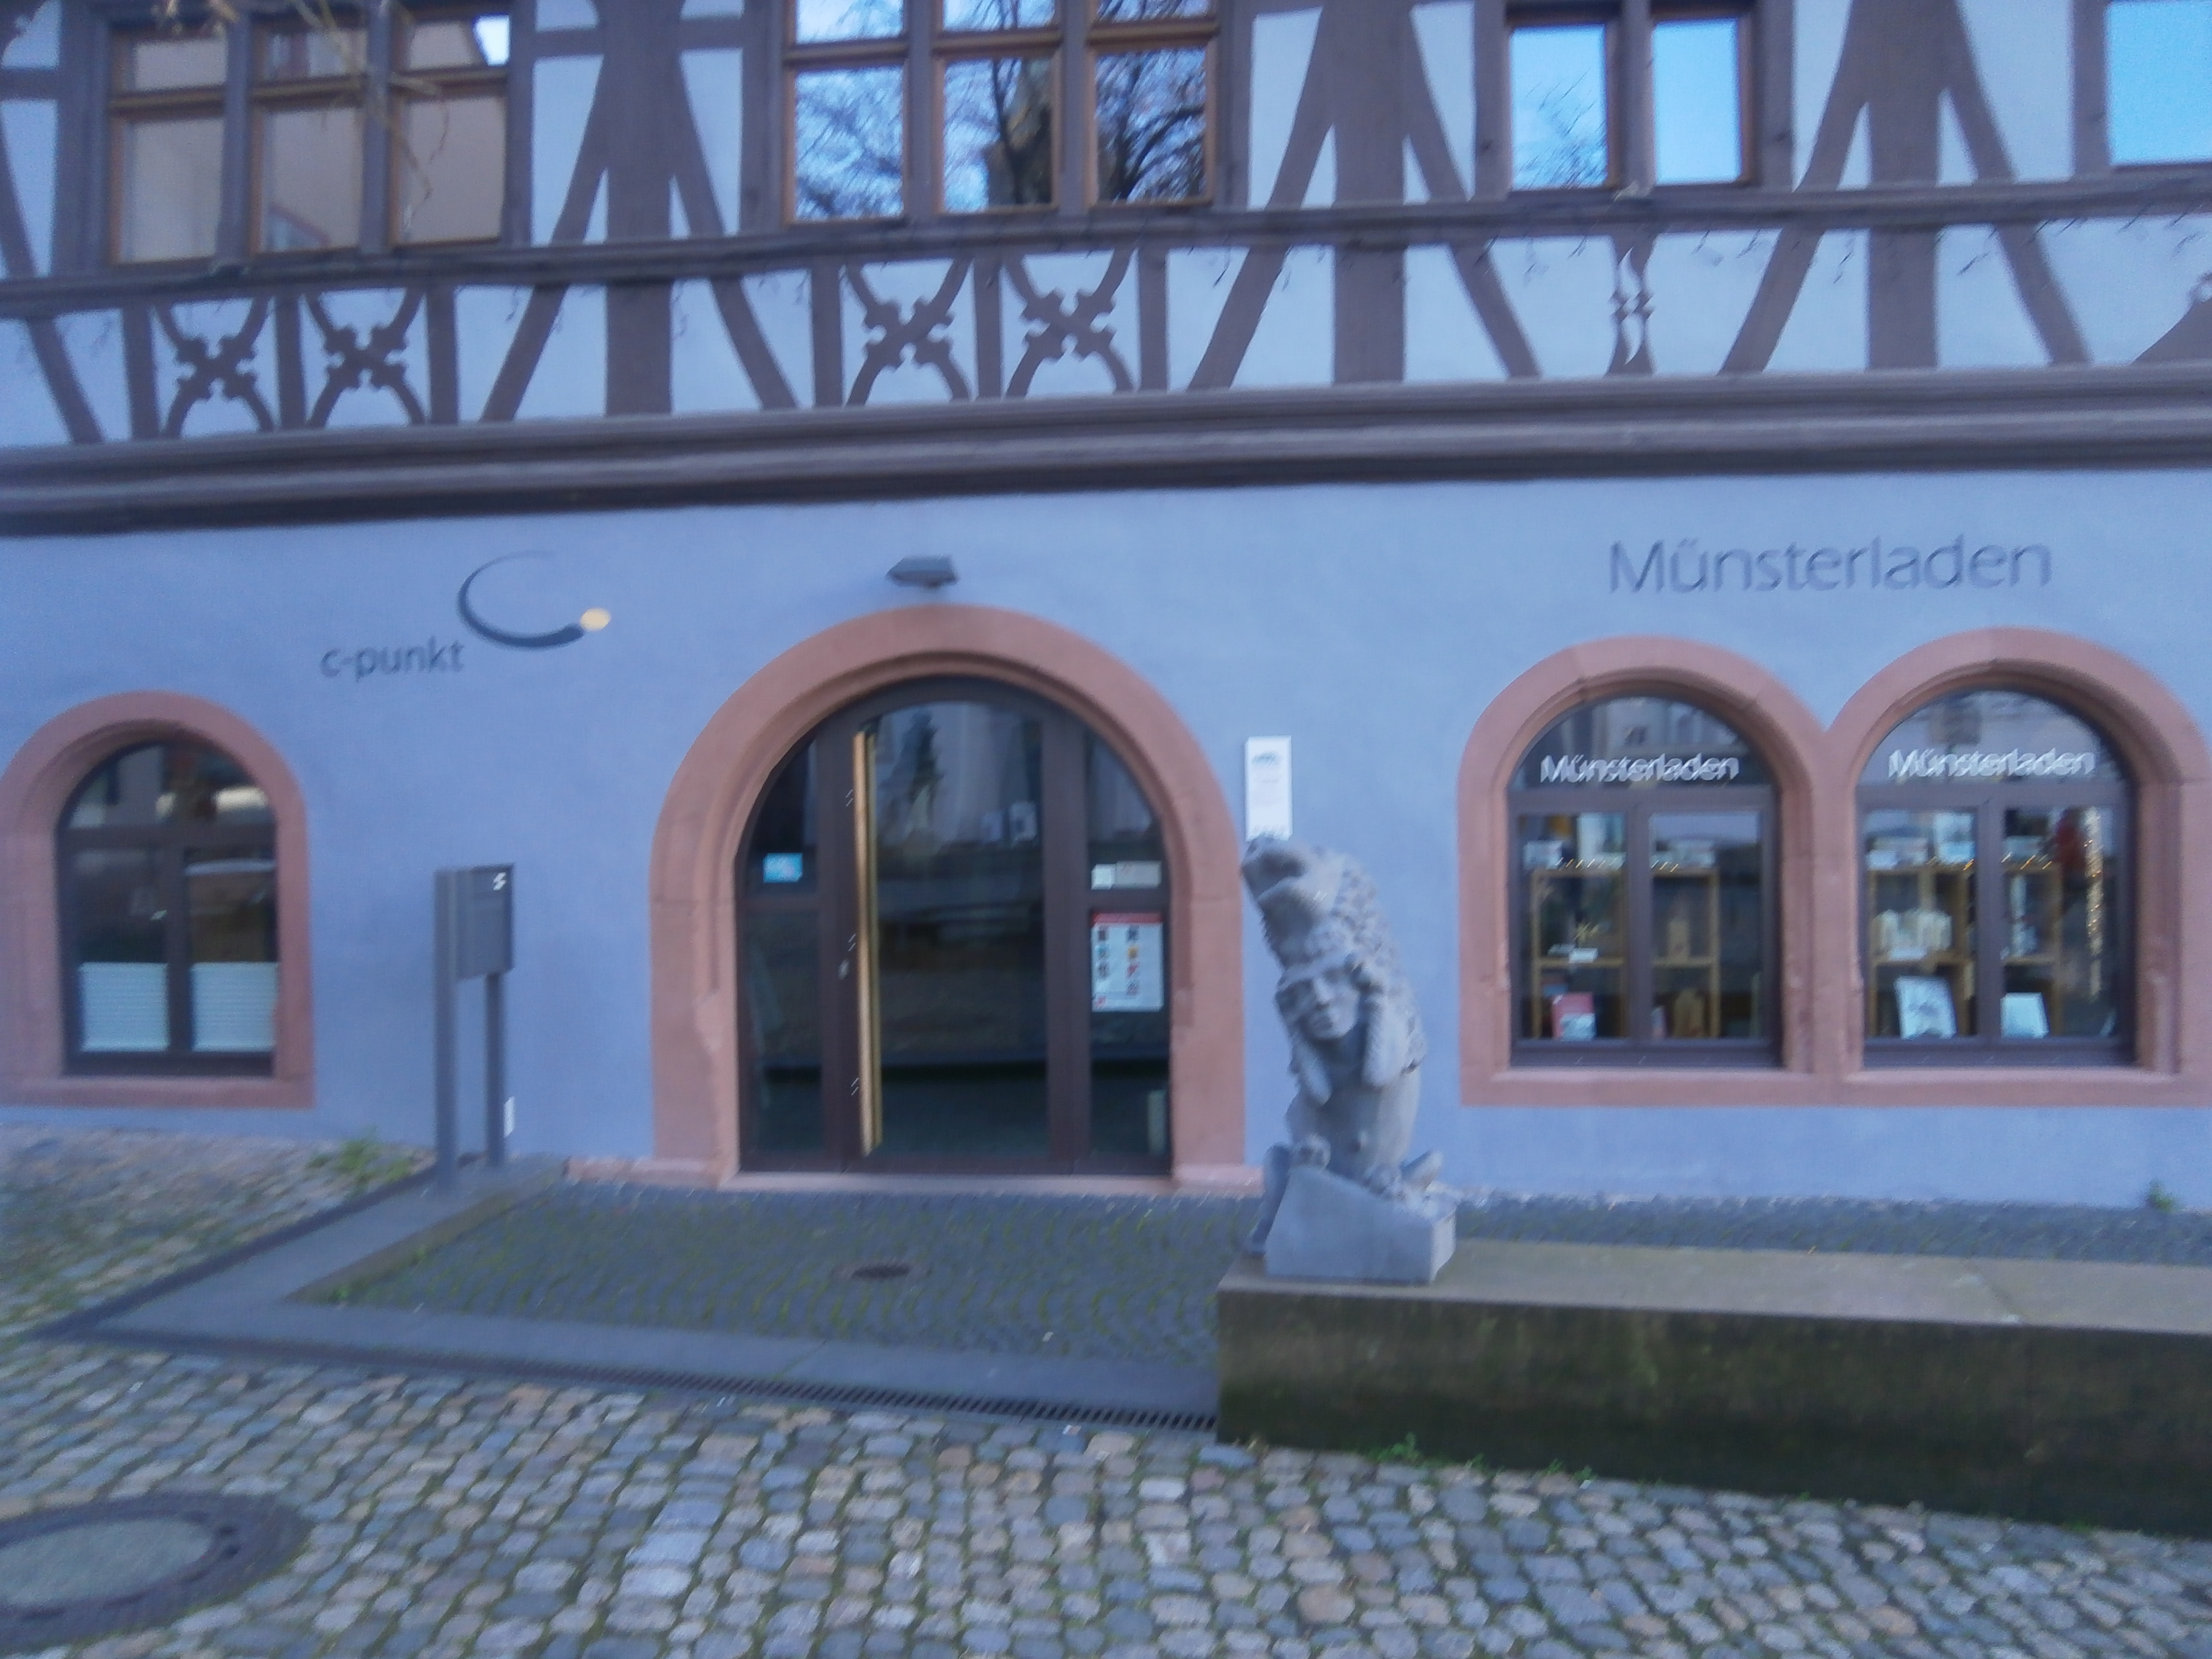 Bild 2 Münsterladen Freiburger Münsterbauverein e.V. in Freiburg im Breisgau